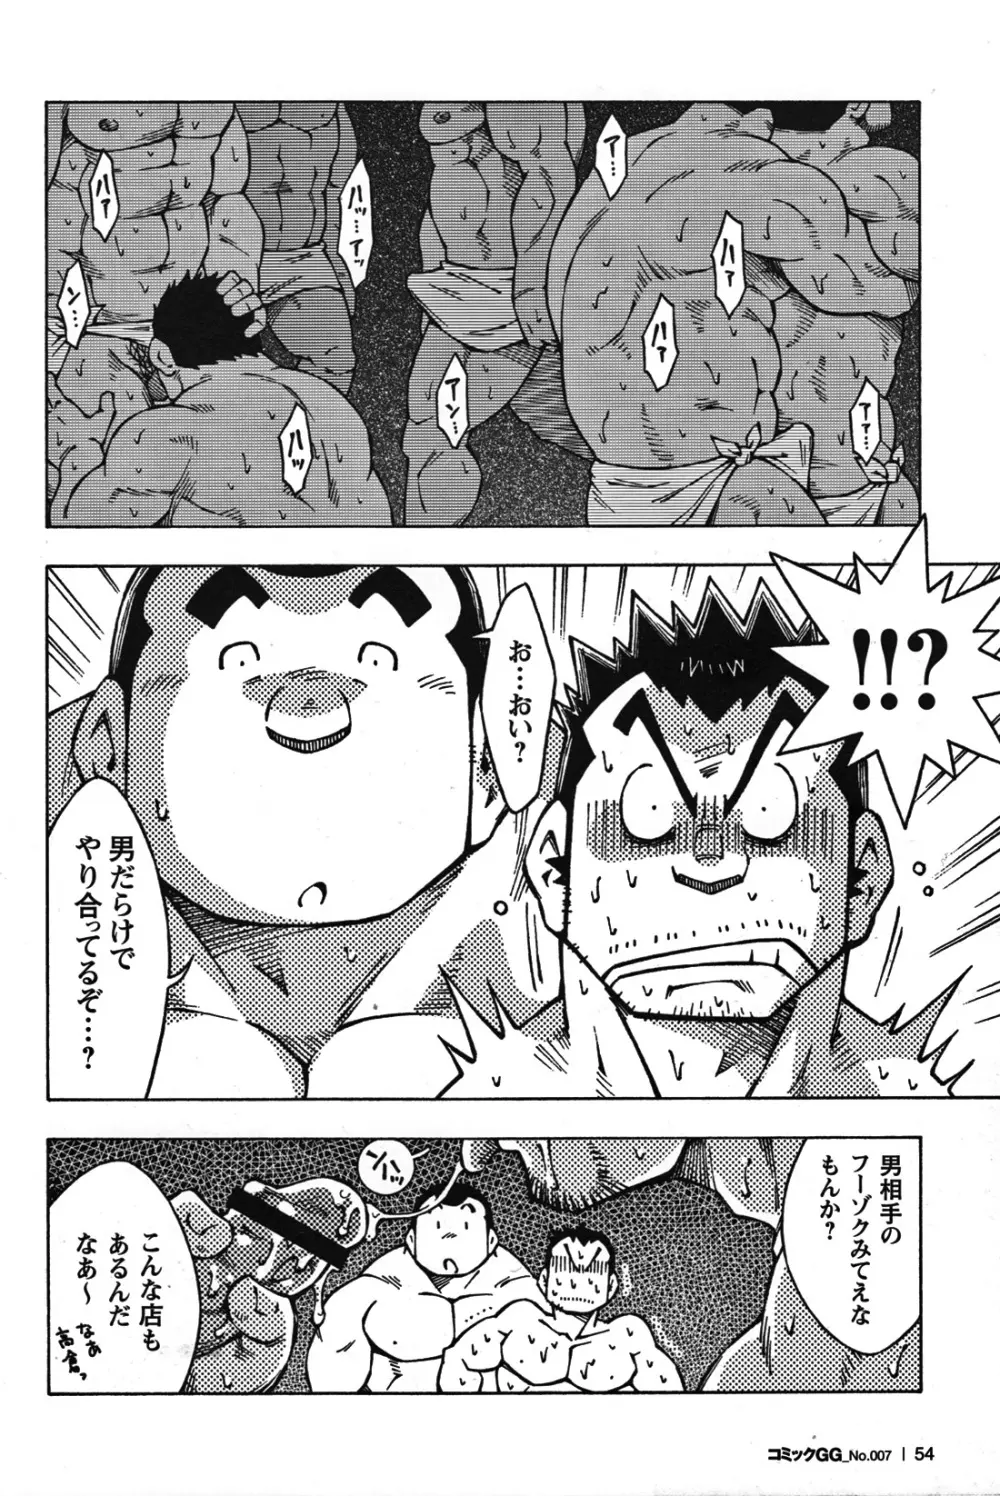 Comic G-men Gaho No.07 51ページ